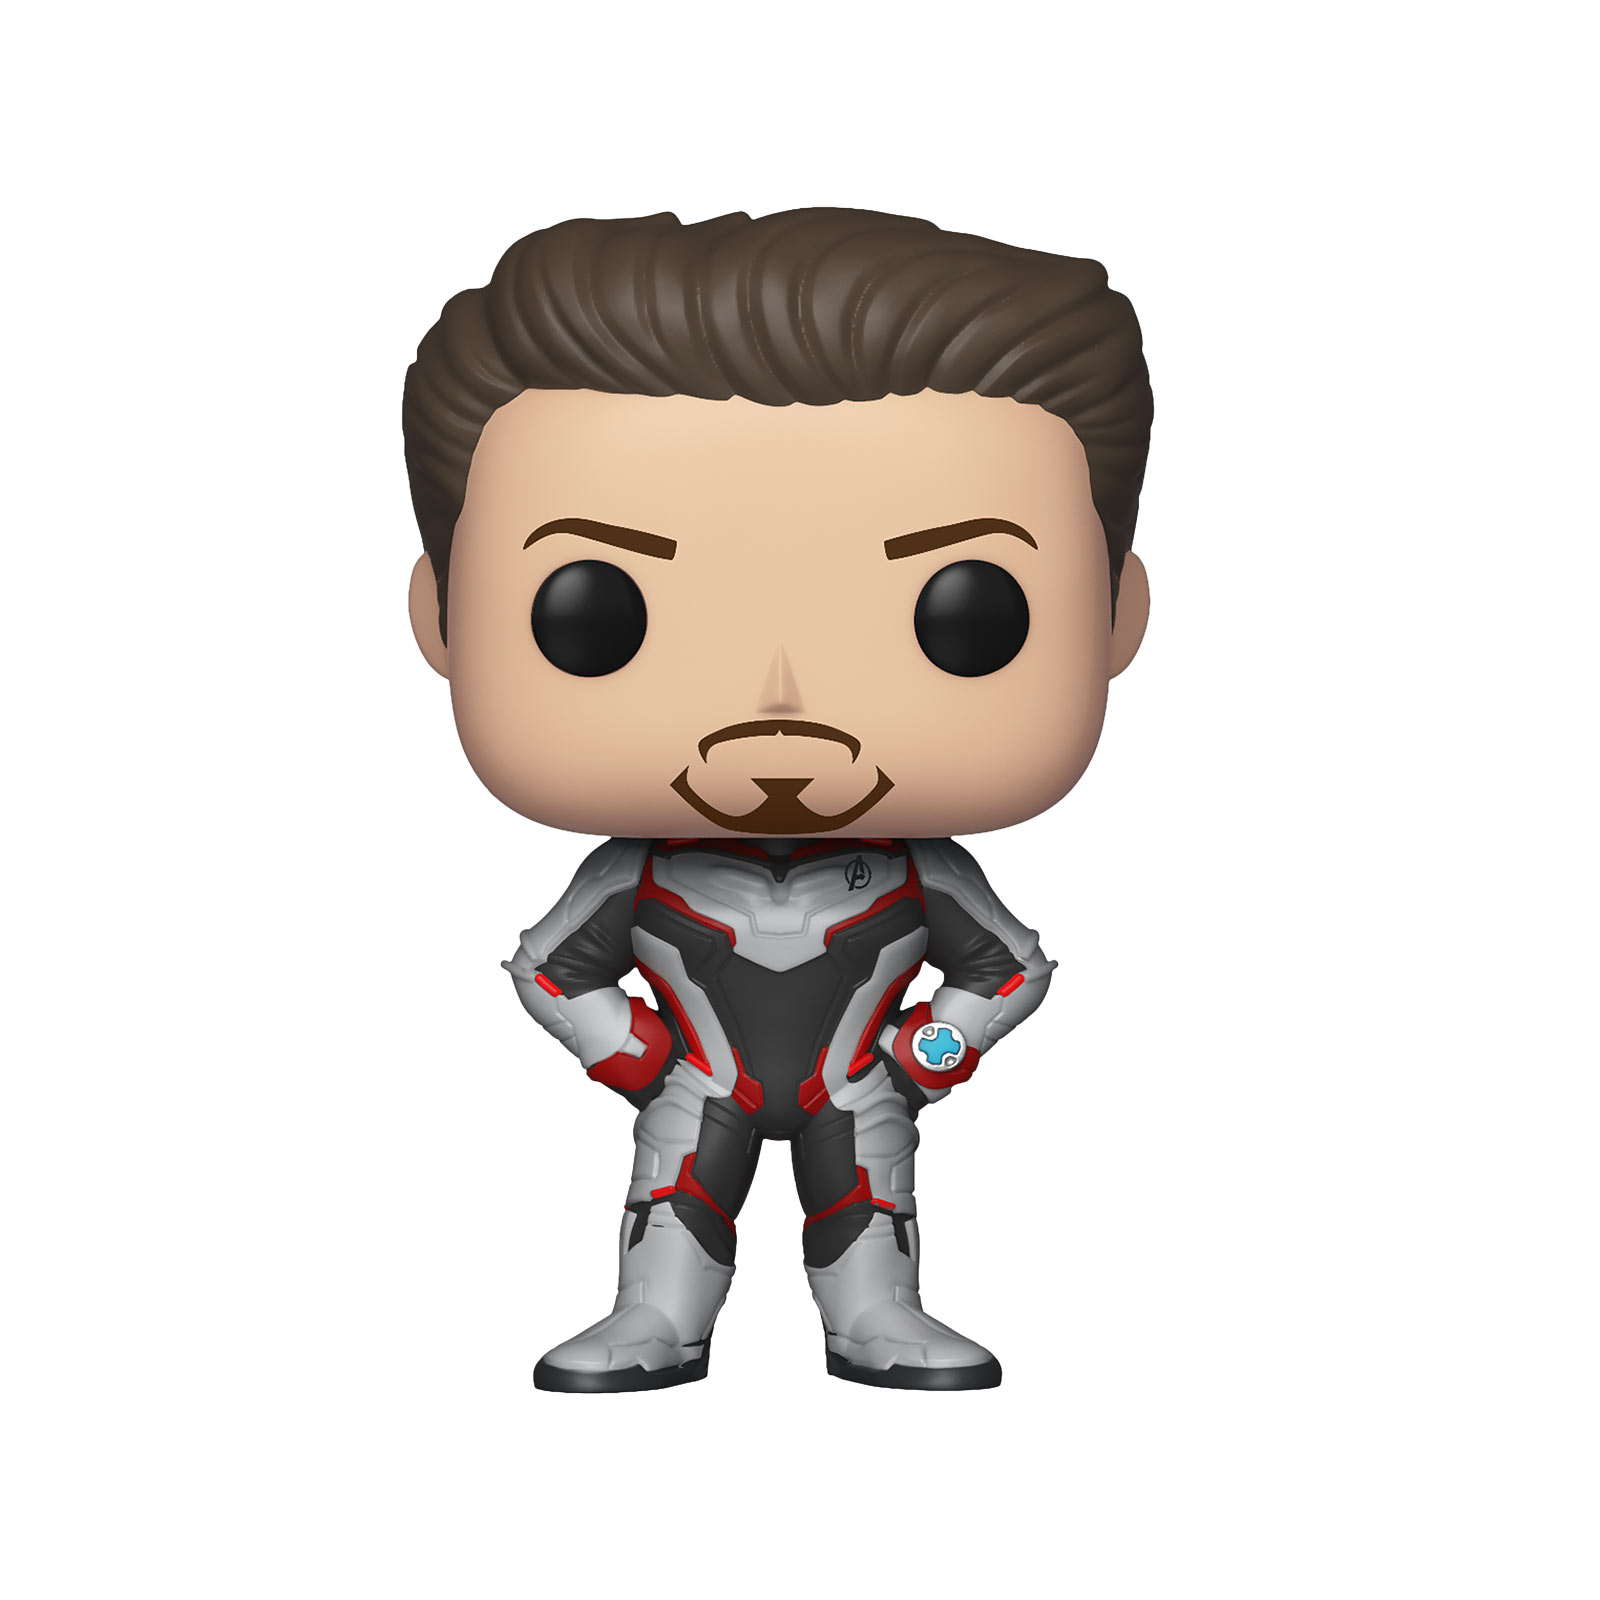 Avengers - Tony Stark Endgame Funko Pop bobblehead figure